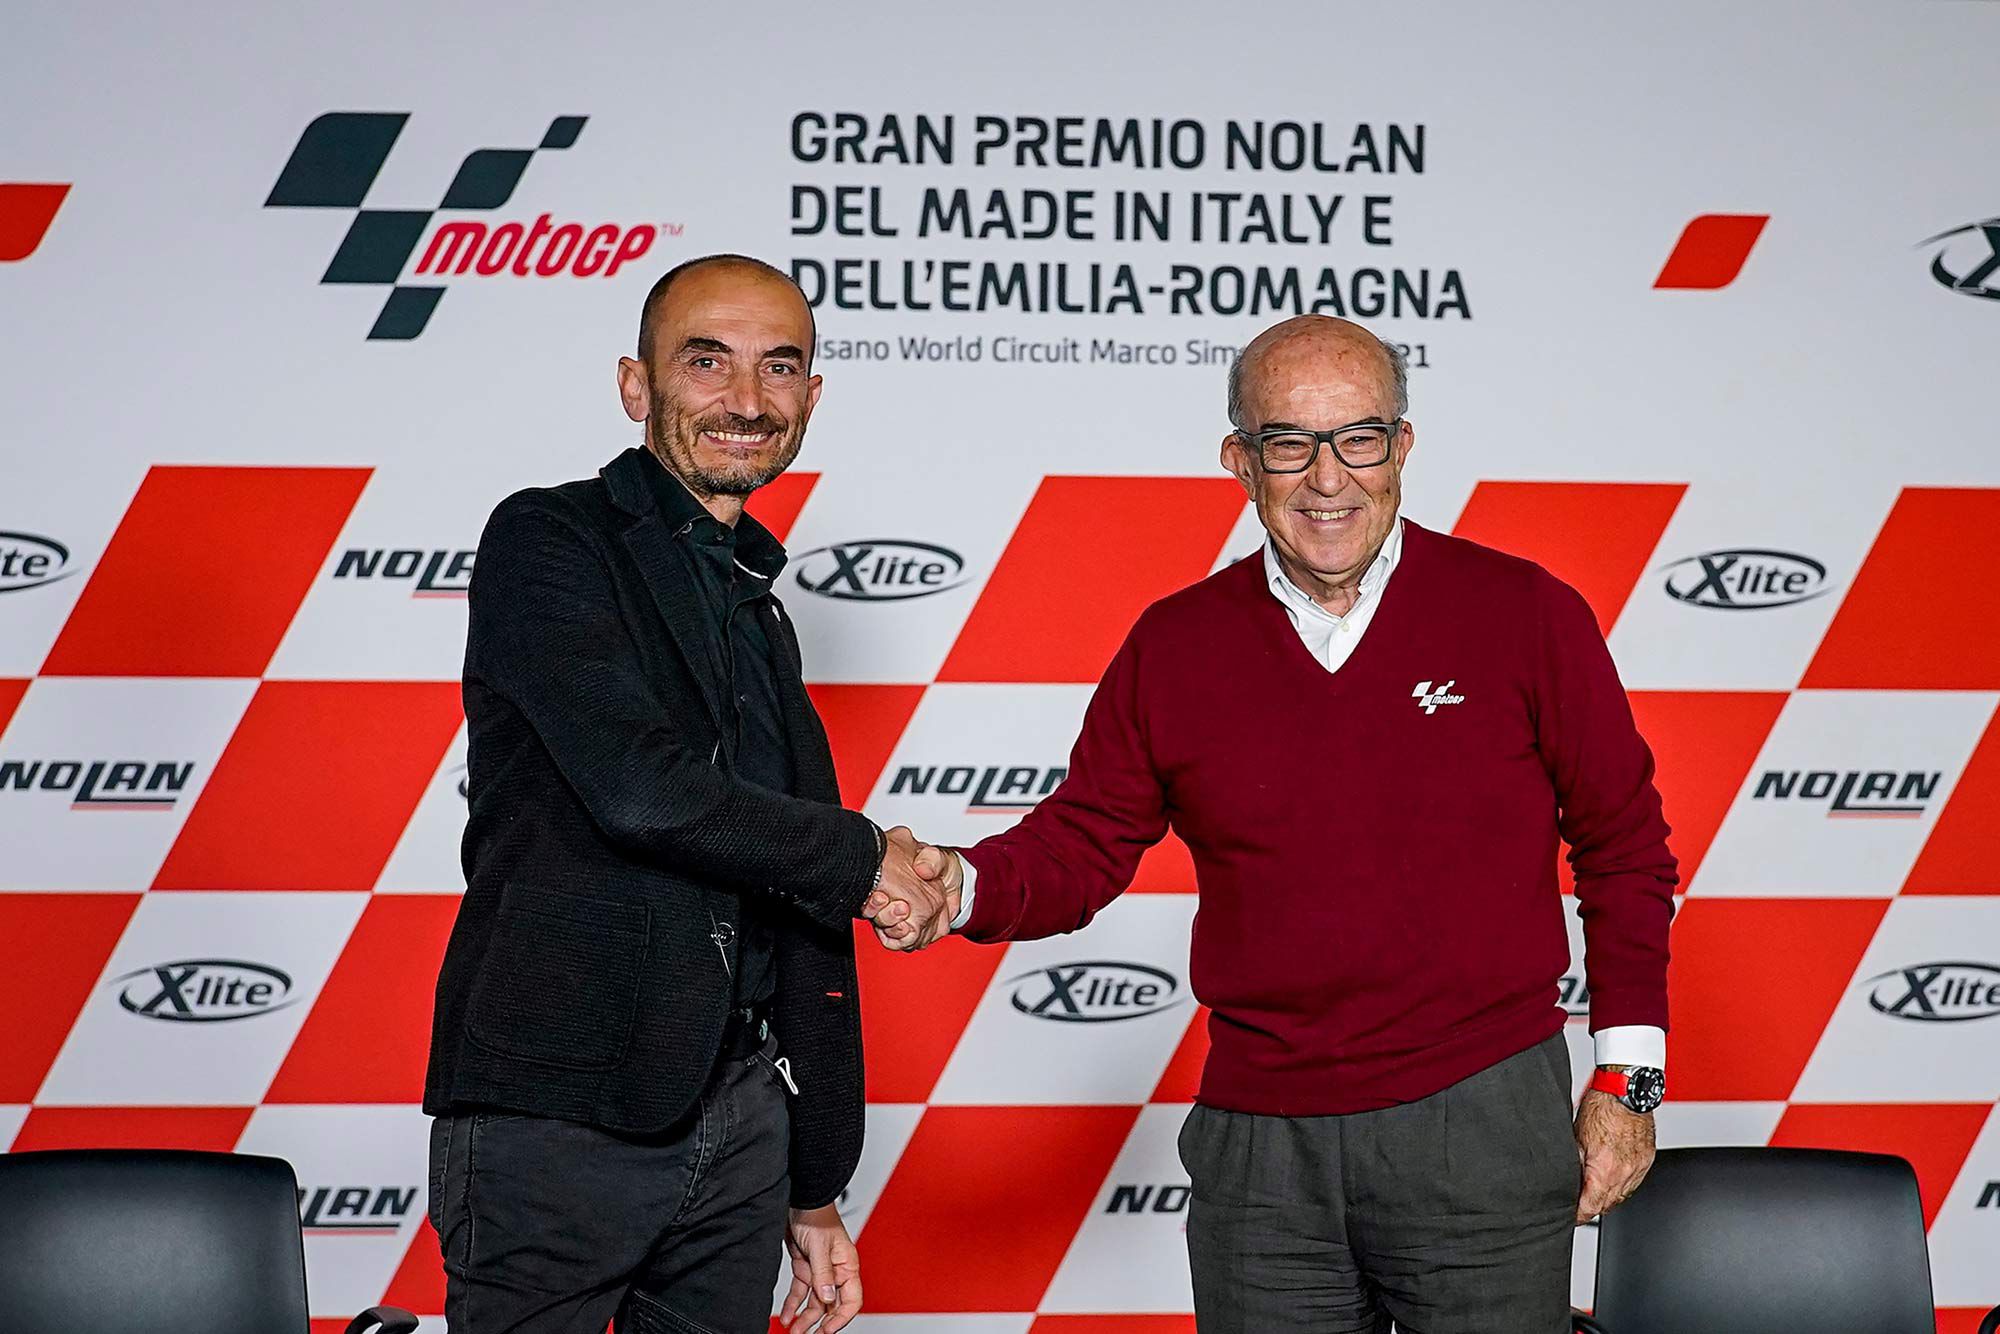 Ducati Motor Holding CEO Claudio Domenicali and Dorna Sports CEO Carmelo Ezpeleta announced the news at Misano World Circuit Marco Simoncelli.